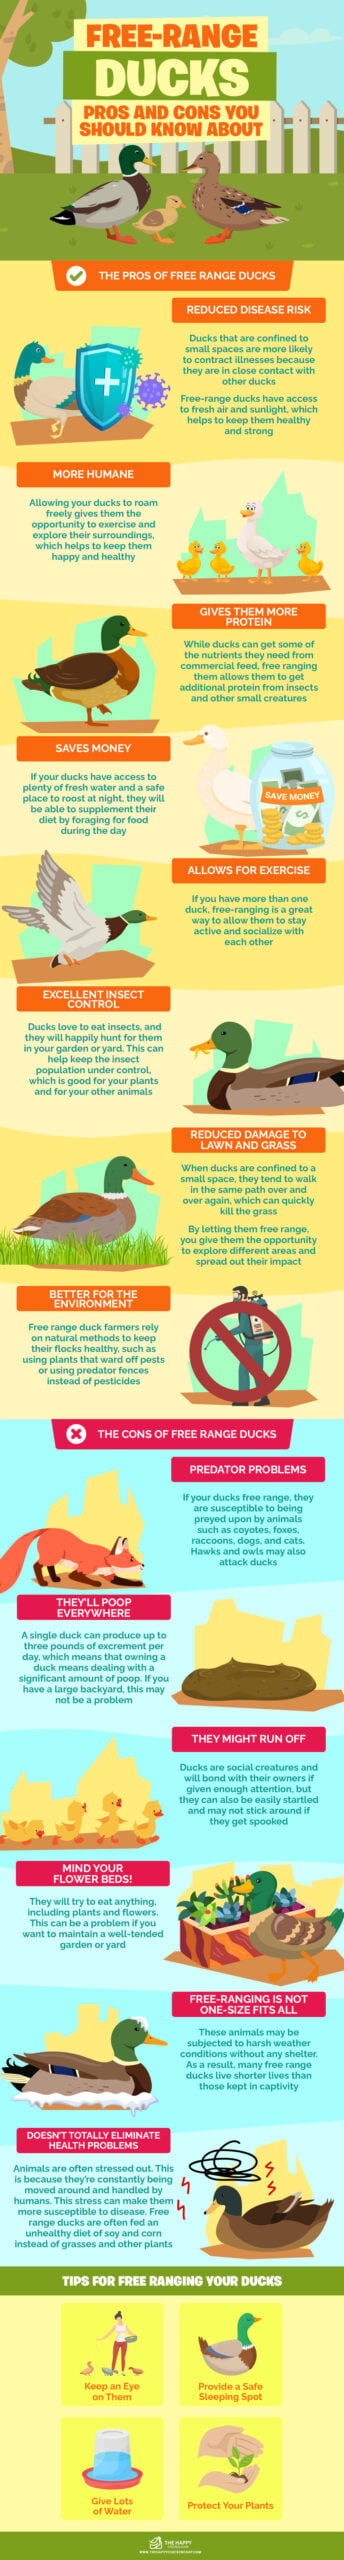 自由放养鸭子信息图表